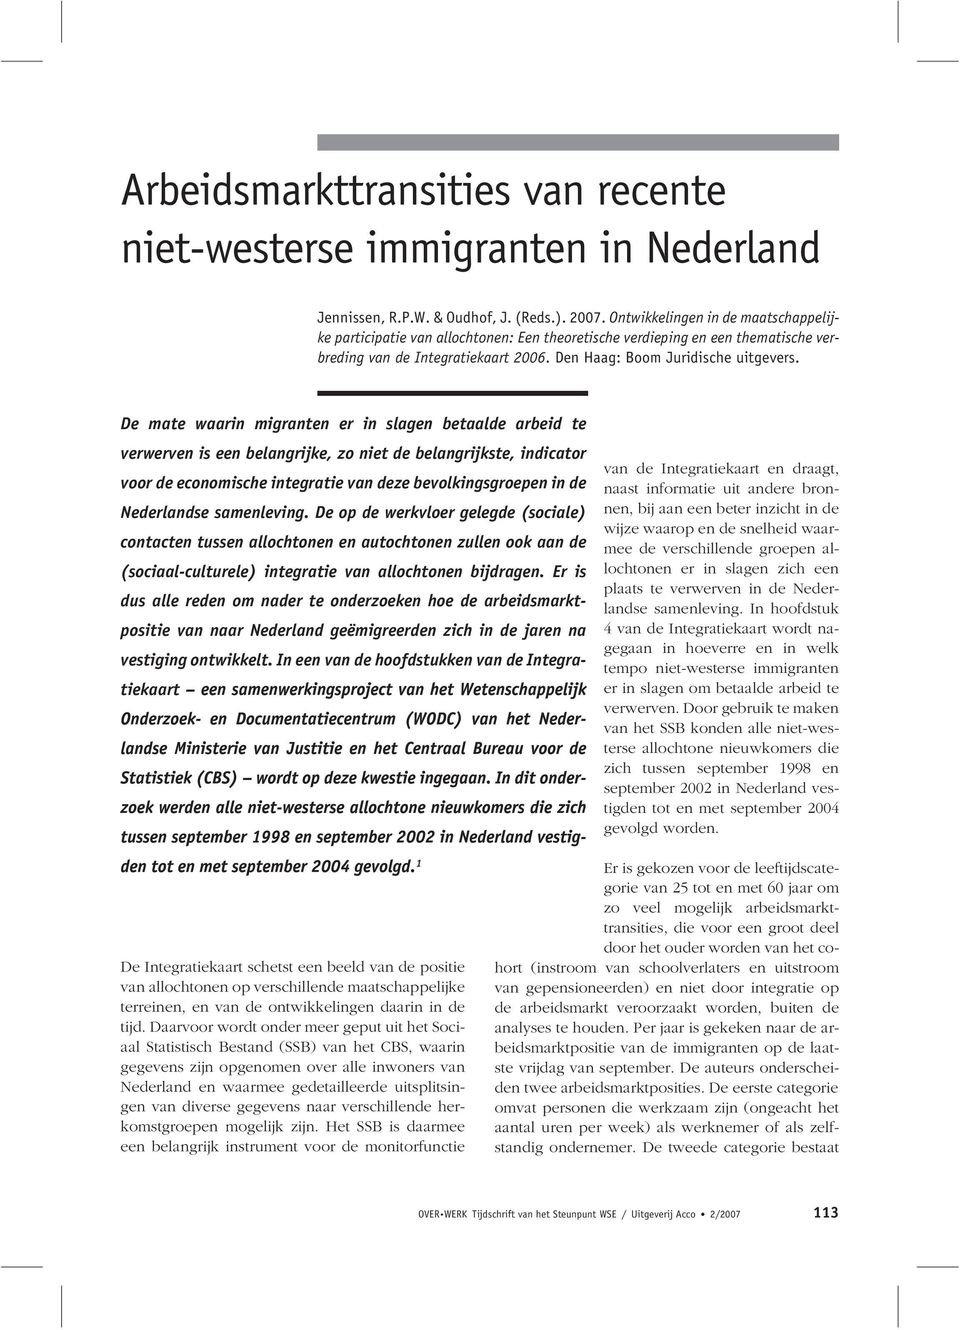 De mate waarin migranten er in slagen betaalde arbeid te verwerven is een belangrijke, zo niet de belangrijkste, indicator voor de economische integratie van deze bevolkingsgroepen in de Nederlandse